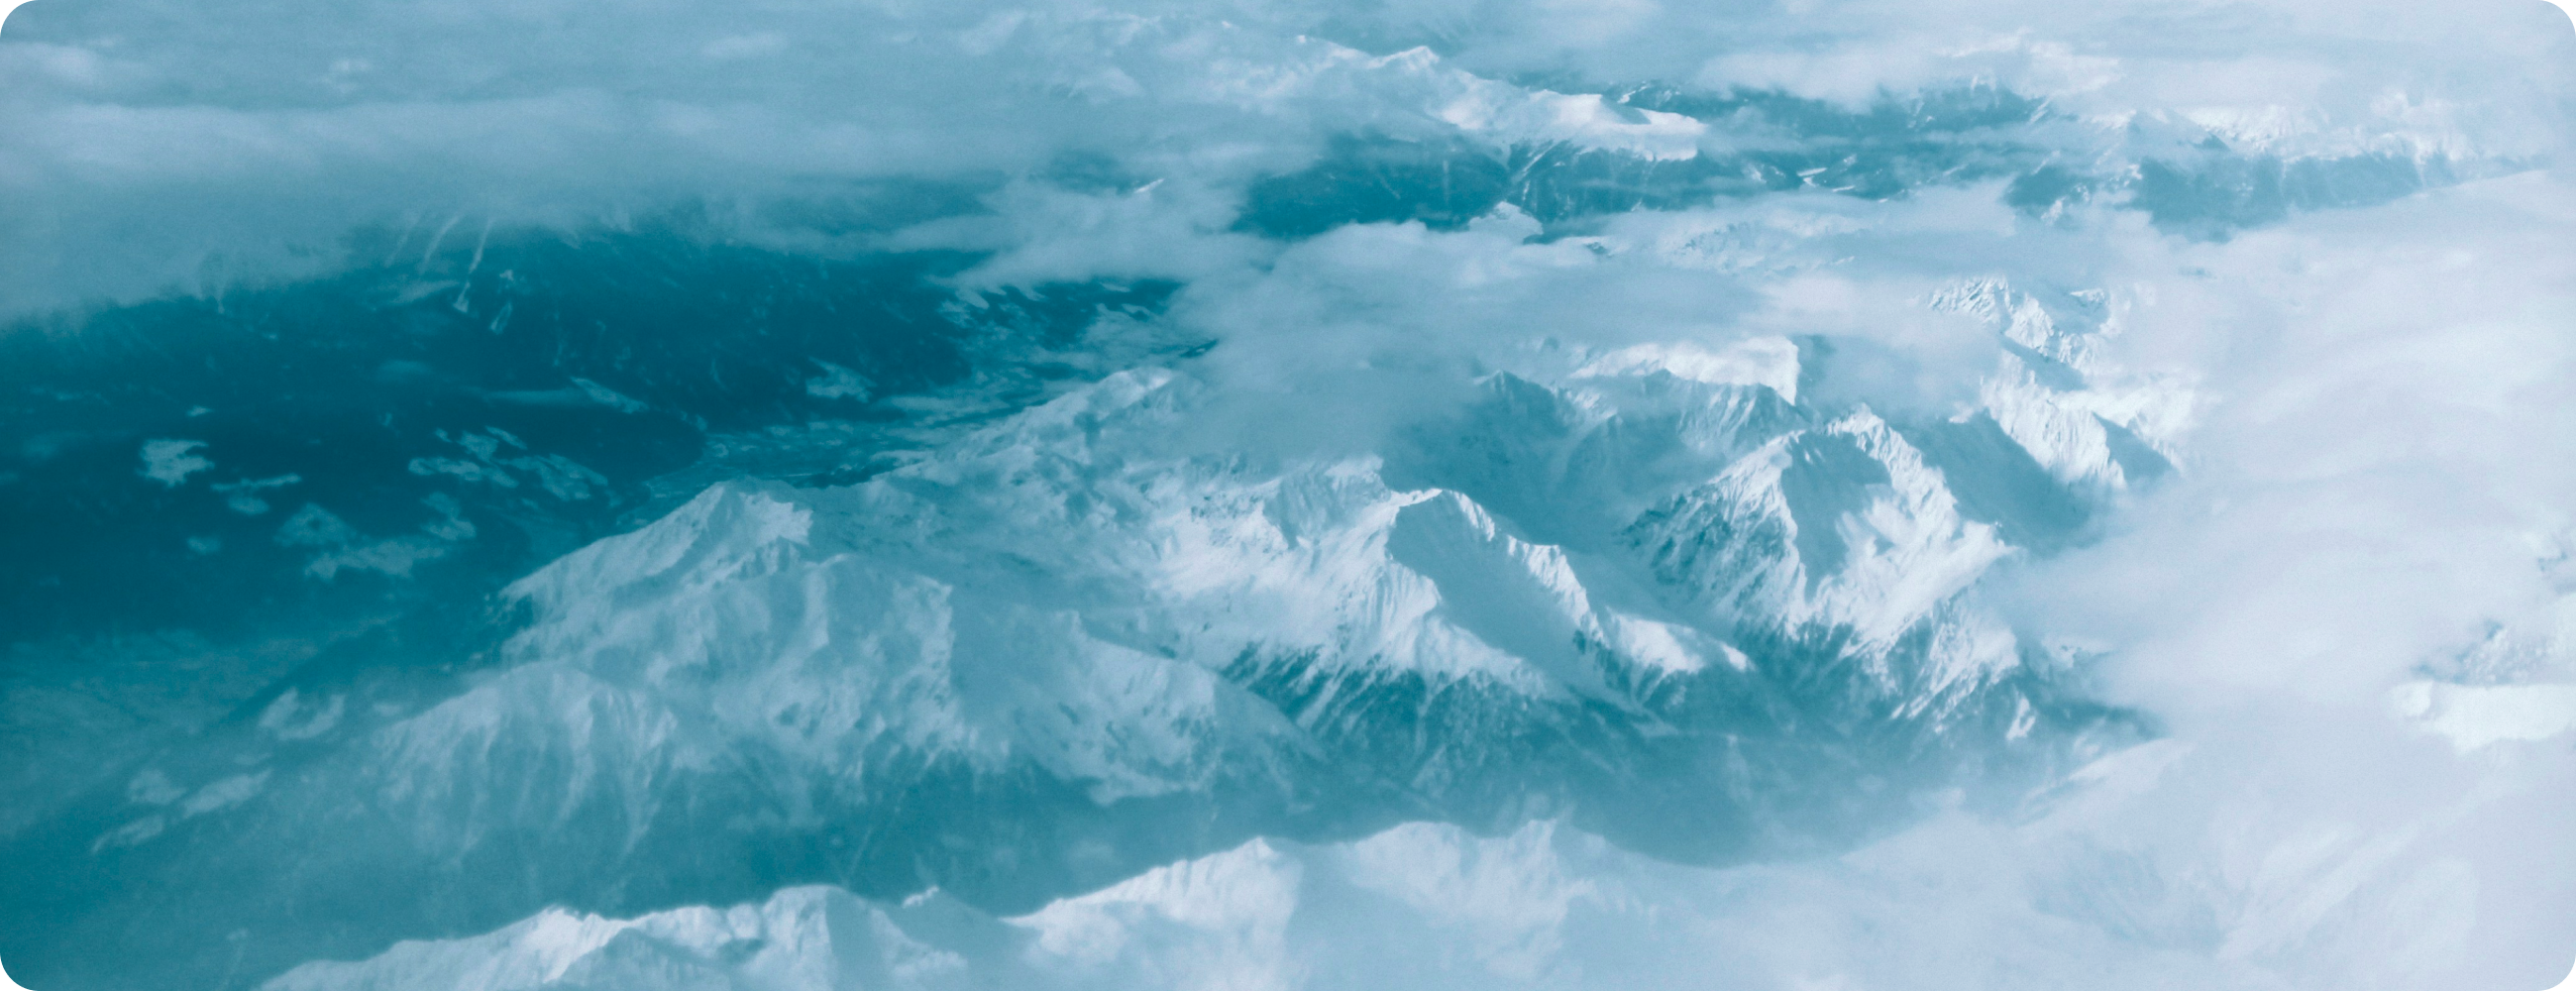 雲の間から見える雪を被った山脈の景色